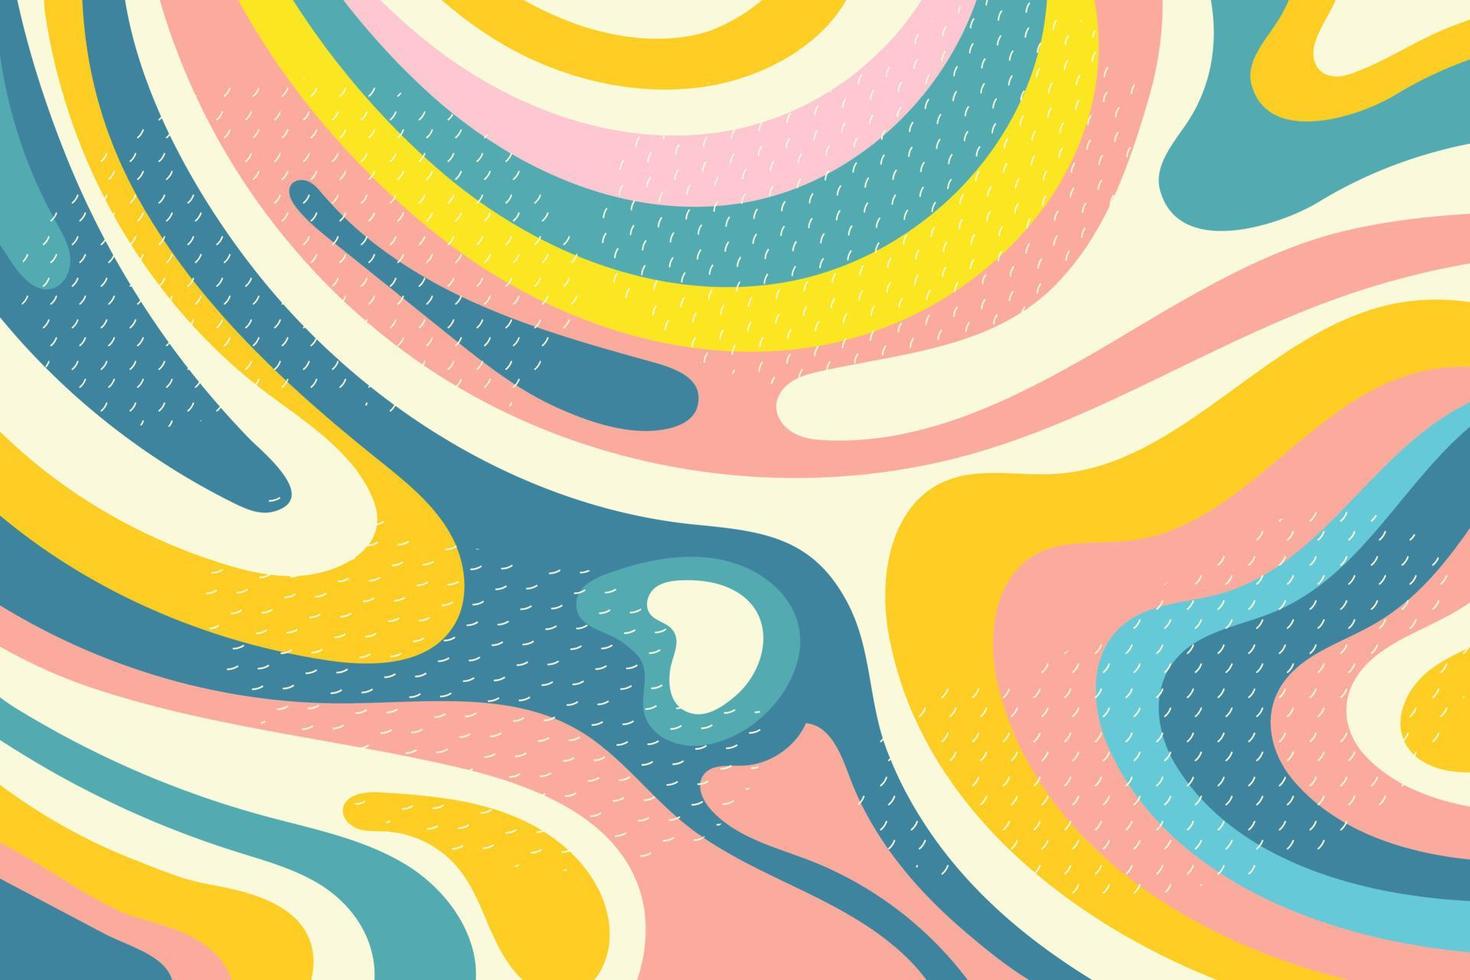 kreativ psychedelisch geometrisch bunt Hintergrund mit Muster. Collage. Design zum Drucke, Poster, Postkarten. Vektor. vektor